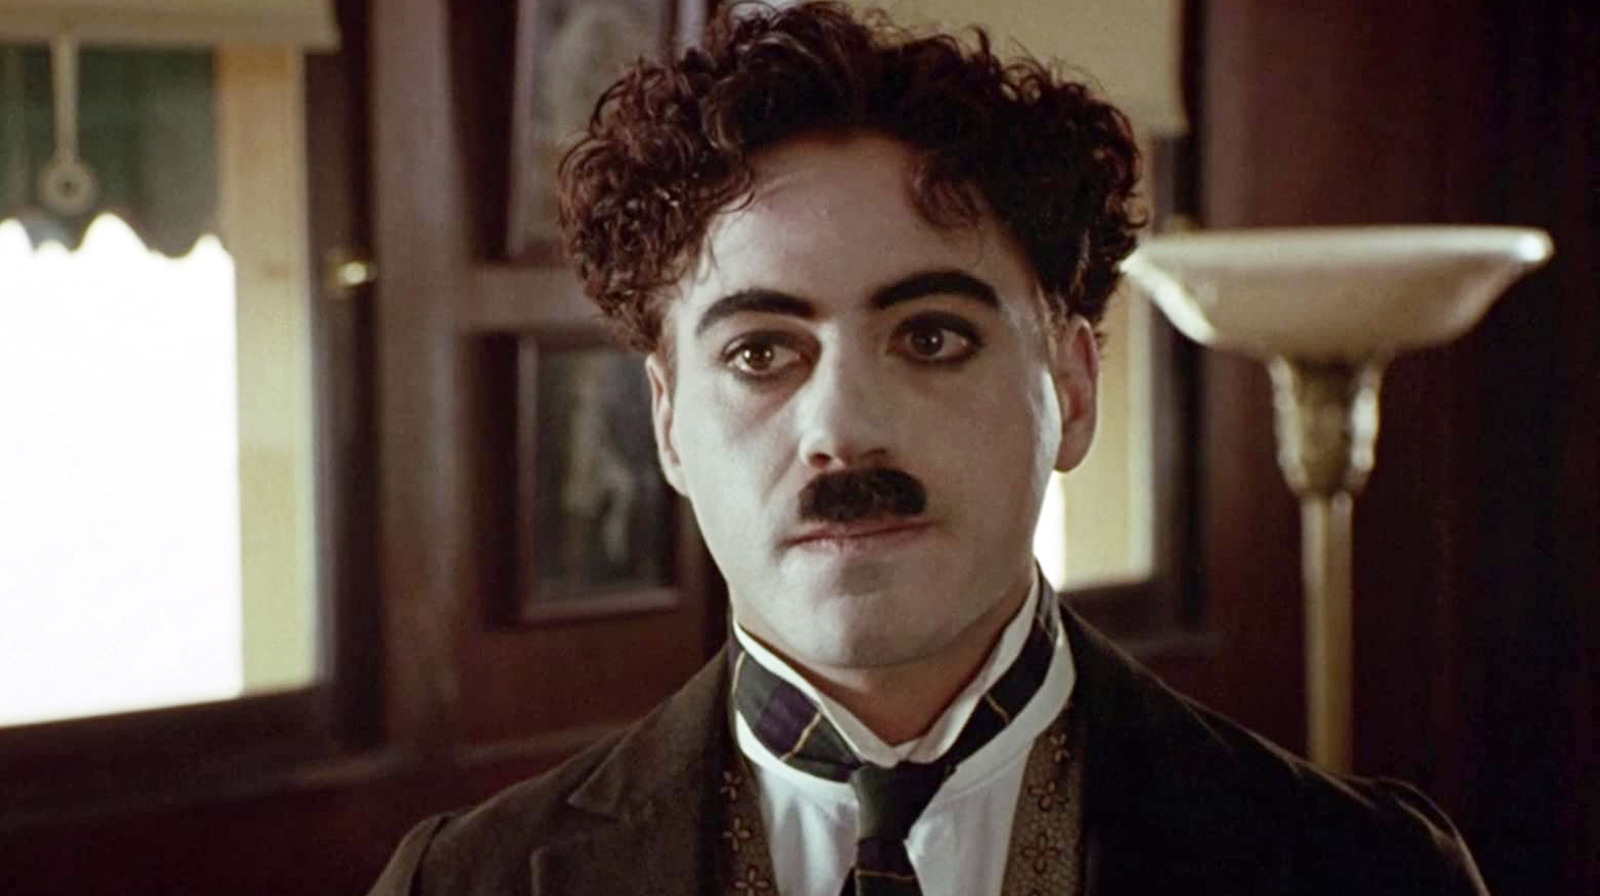 Robert Downey Jr.' in Chaplin